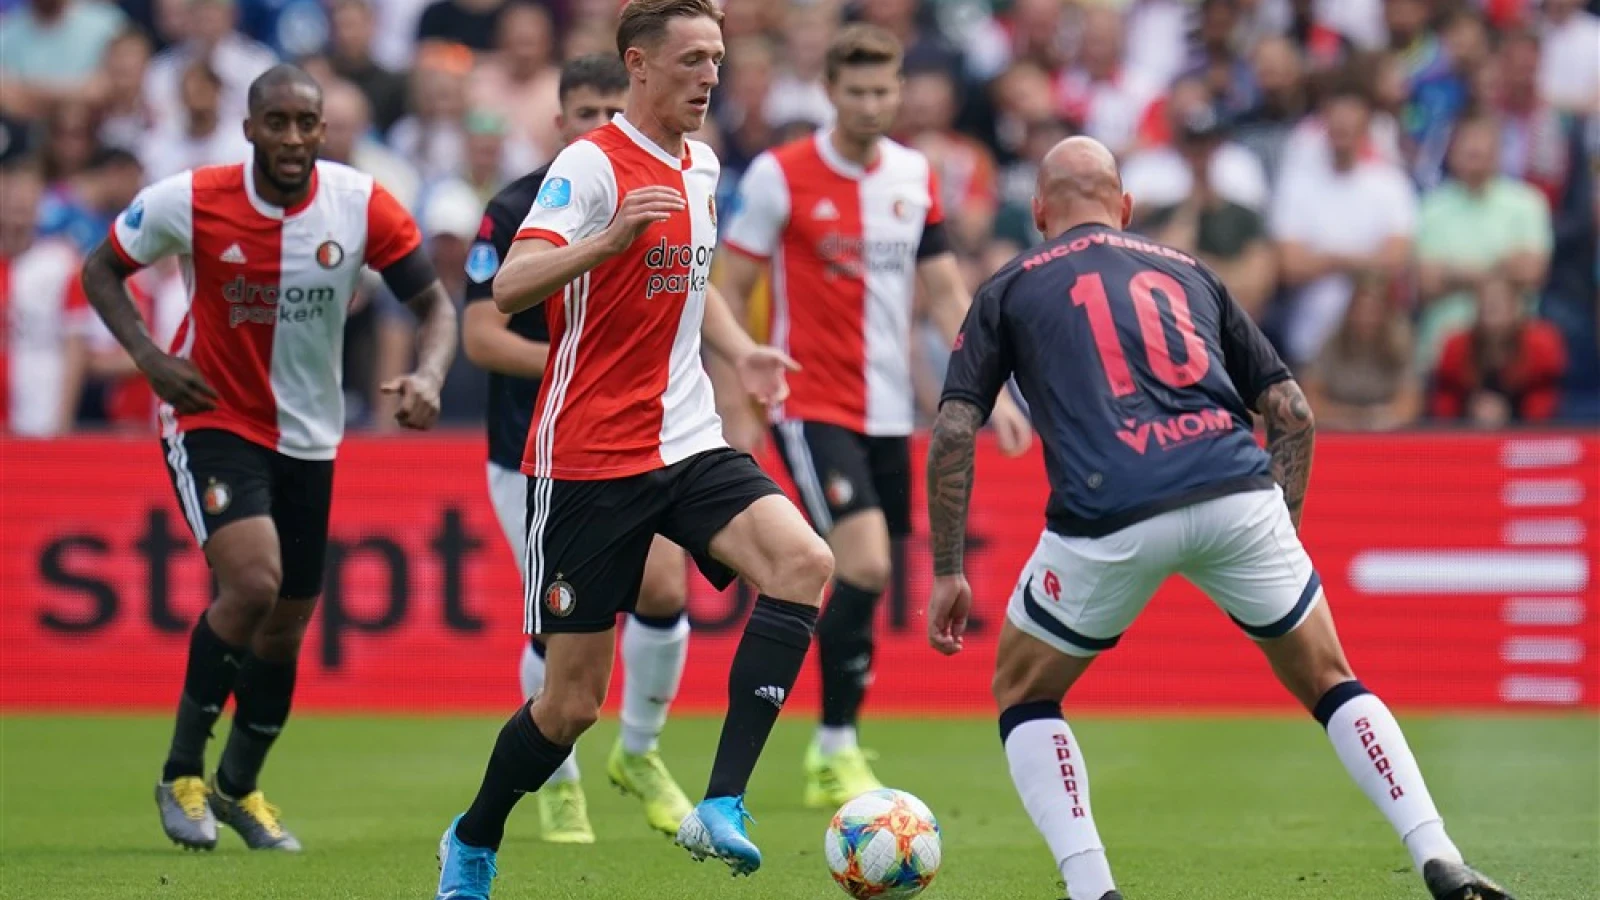 LIVE | Feyenoord - Sparta 2-2 | Einde wedstrijd